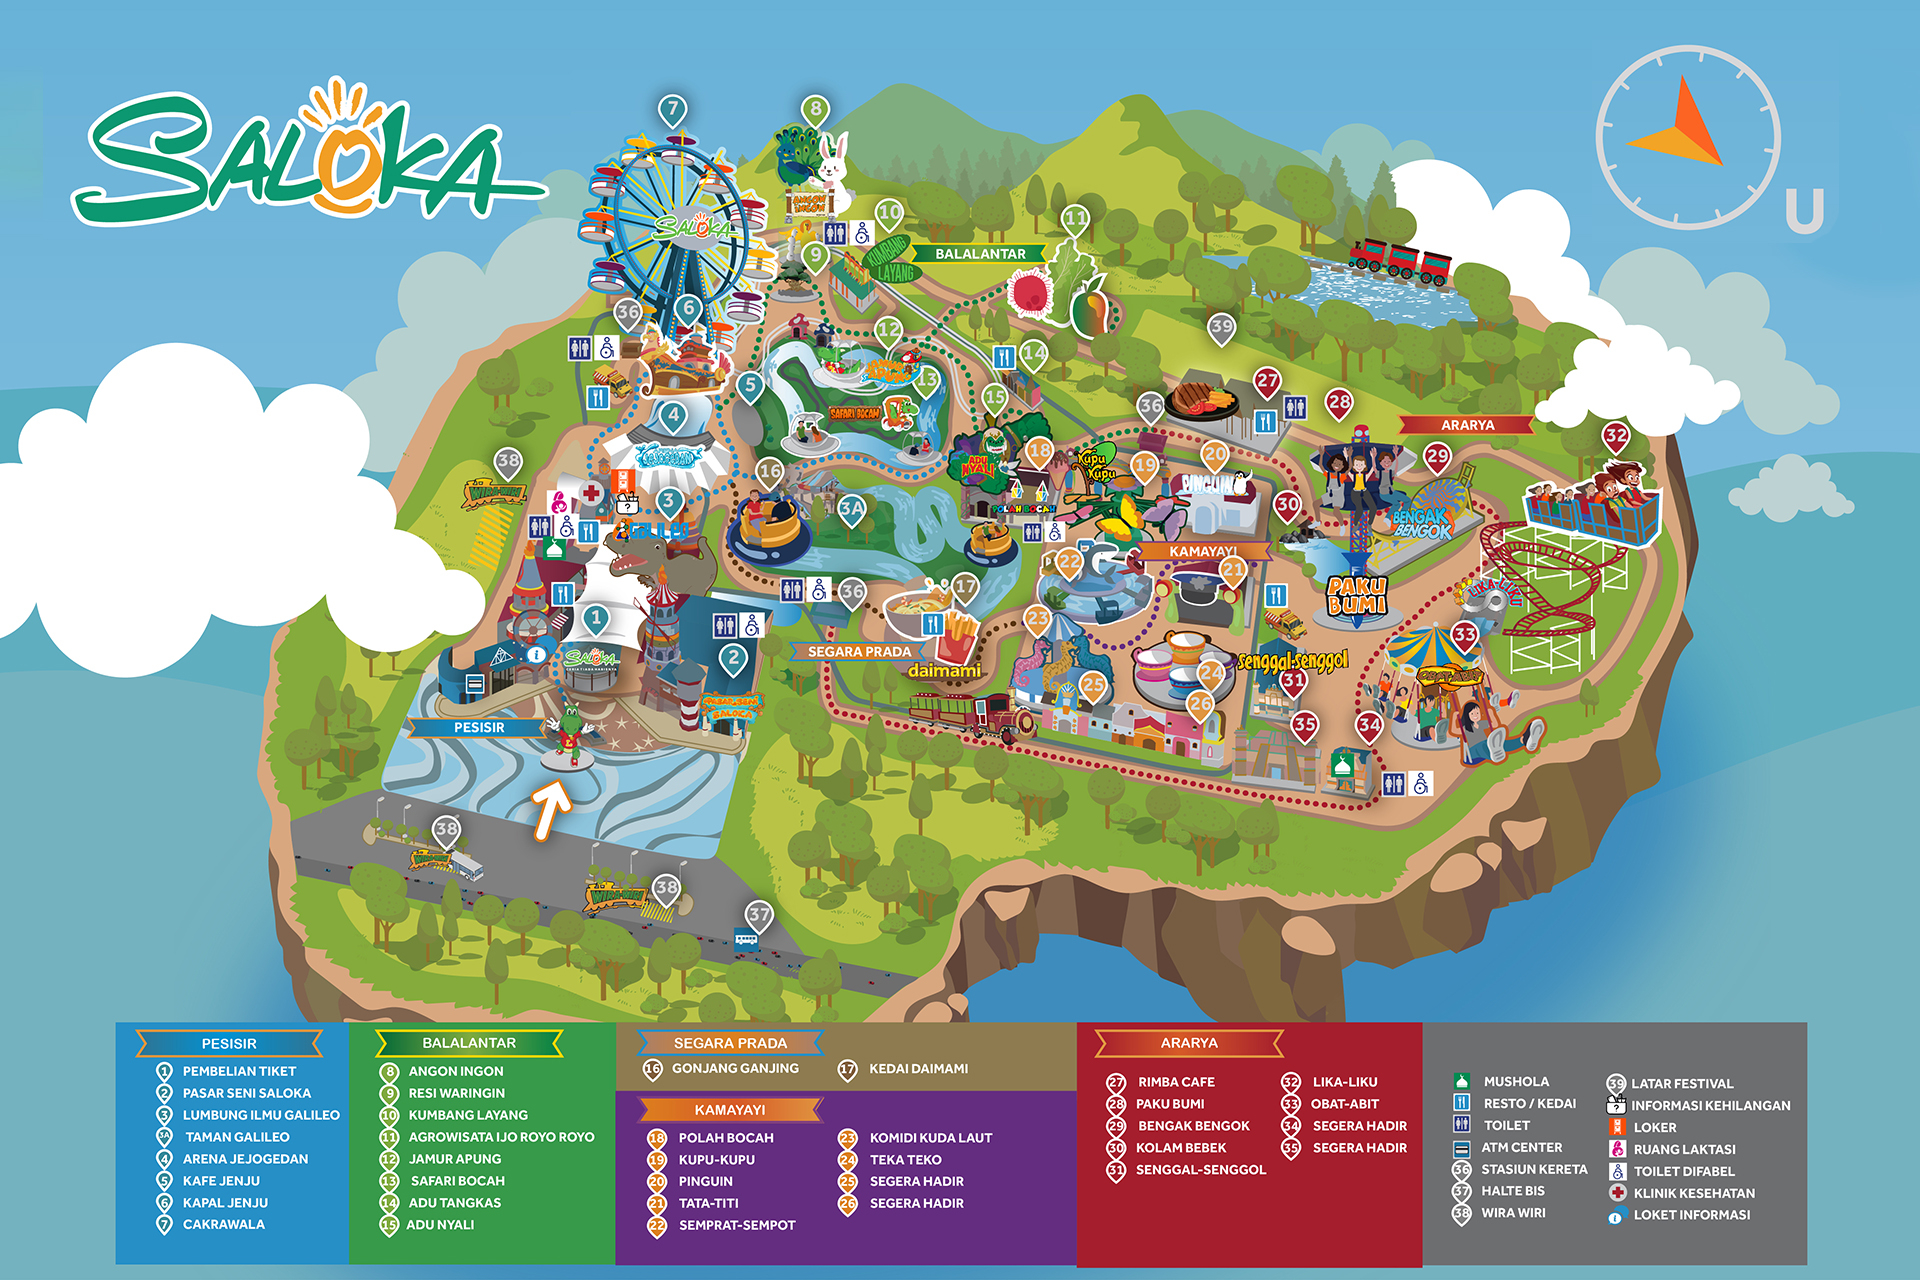 Tiket Saloka Theme Park.jpg